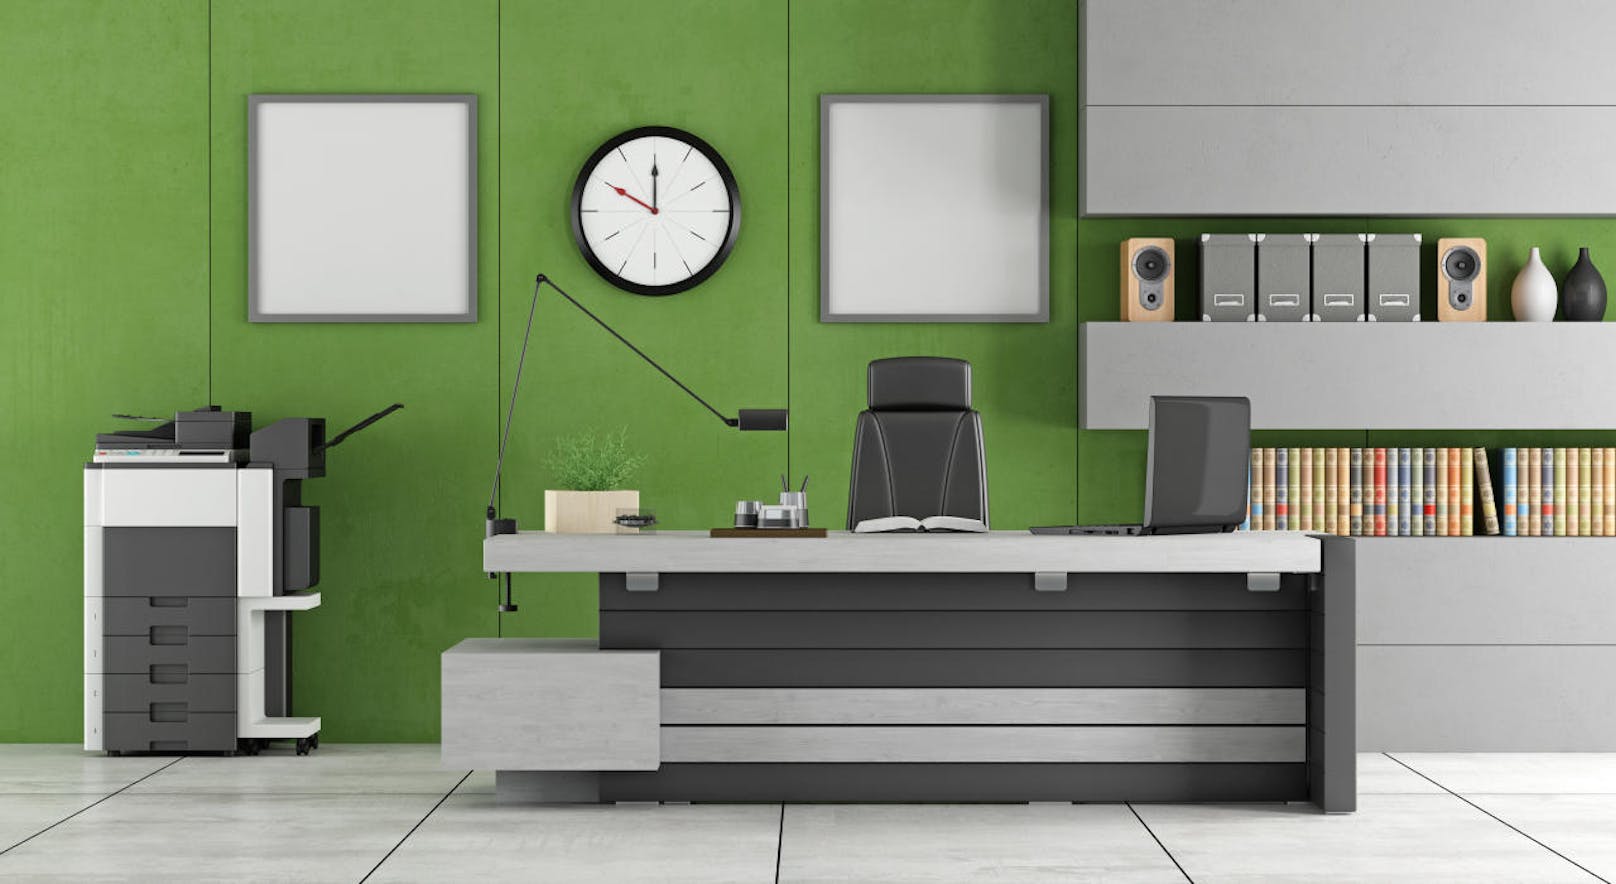 Grün erinnert uns an die Natur und beruhigt - und grün ist auch die Hoffnung. In grünen Räumen können wir uns besser konzentrieren, diese Farbe eignet sich also zum Beispiel fürs Büro.